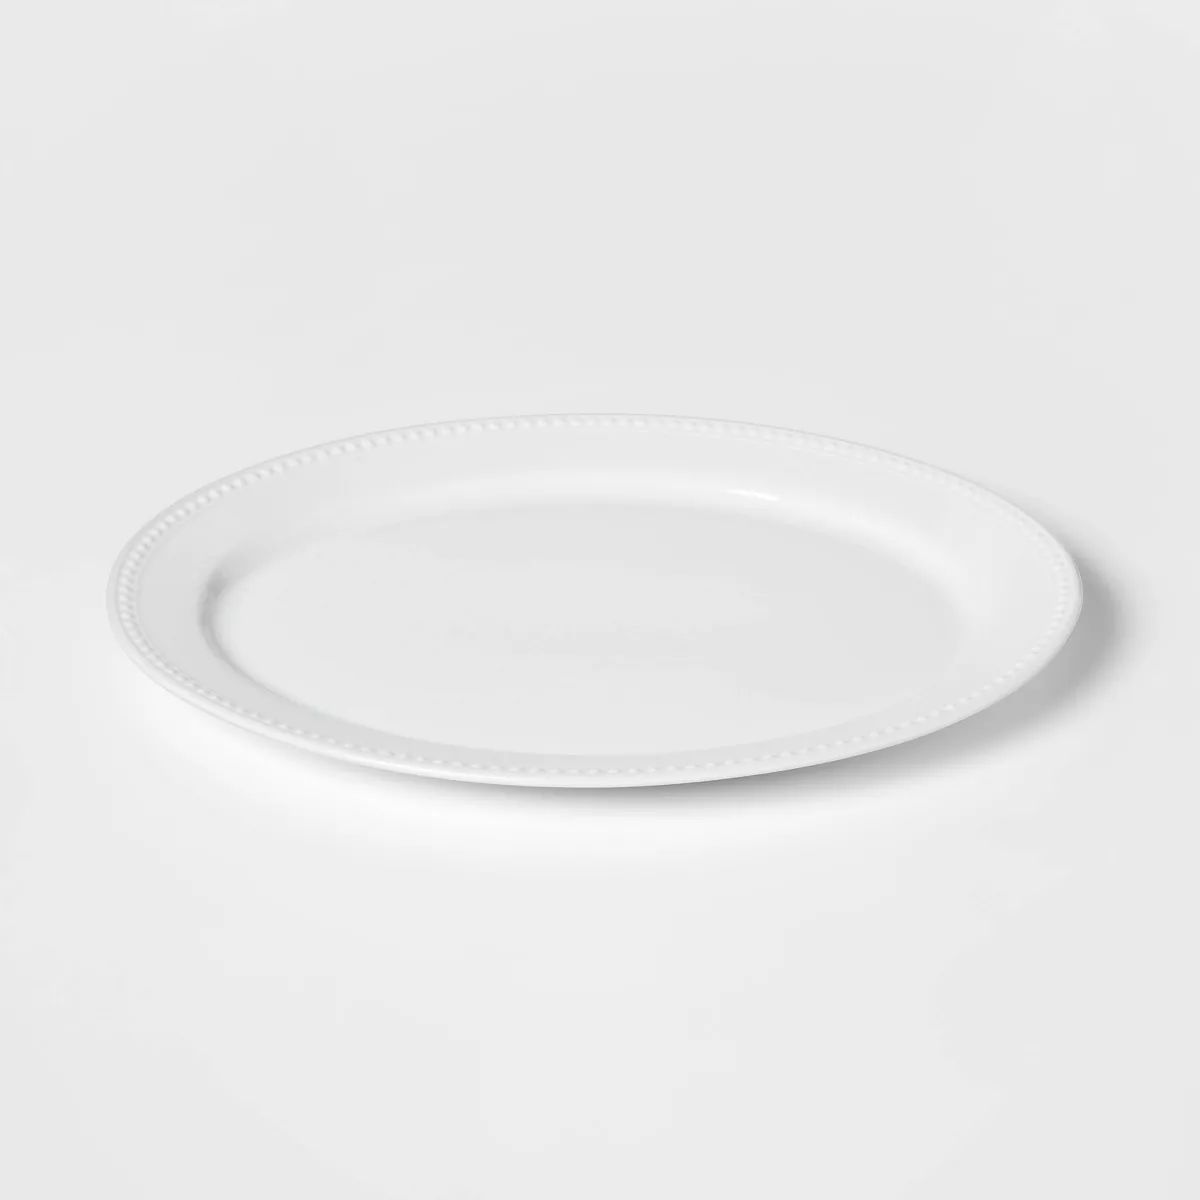 15" x 12" Ceramic Oval Beaded Platter White - Threshold™ | Target